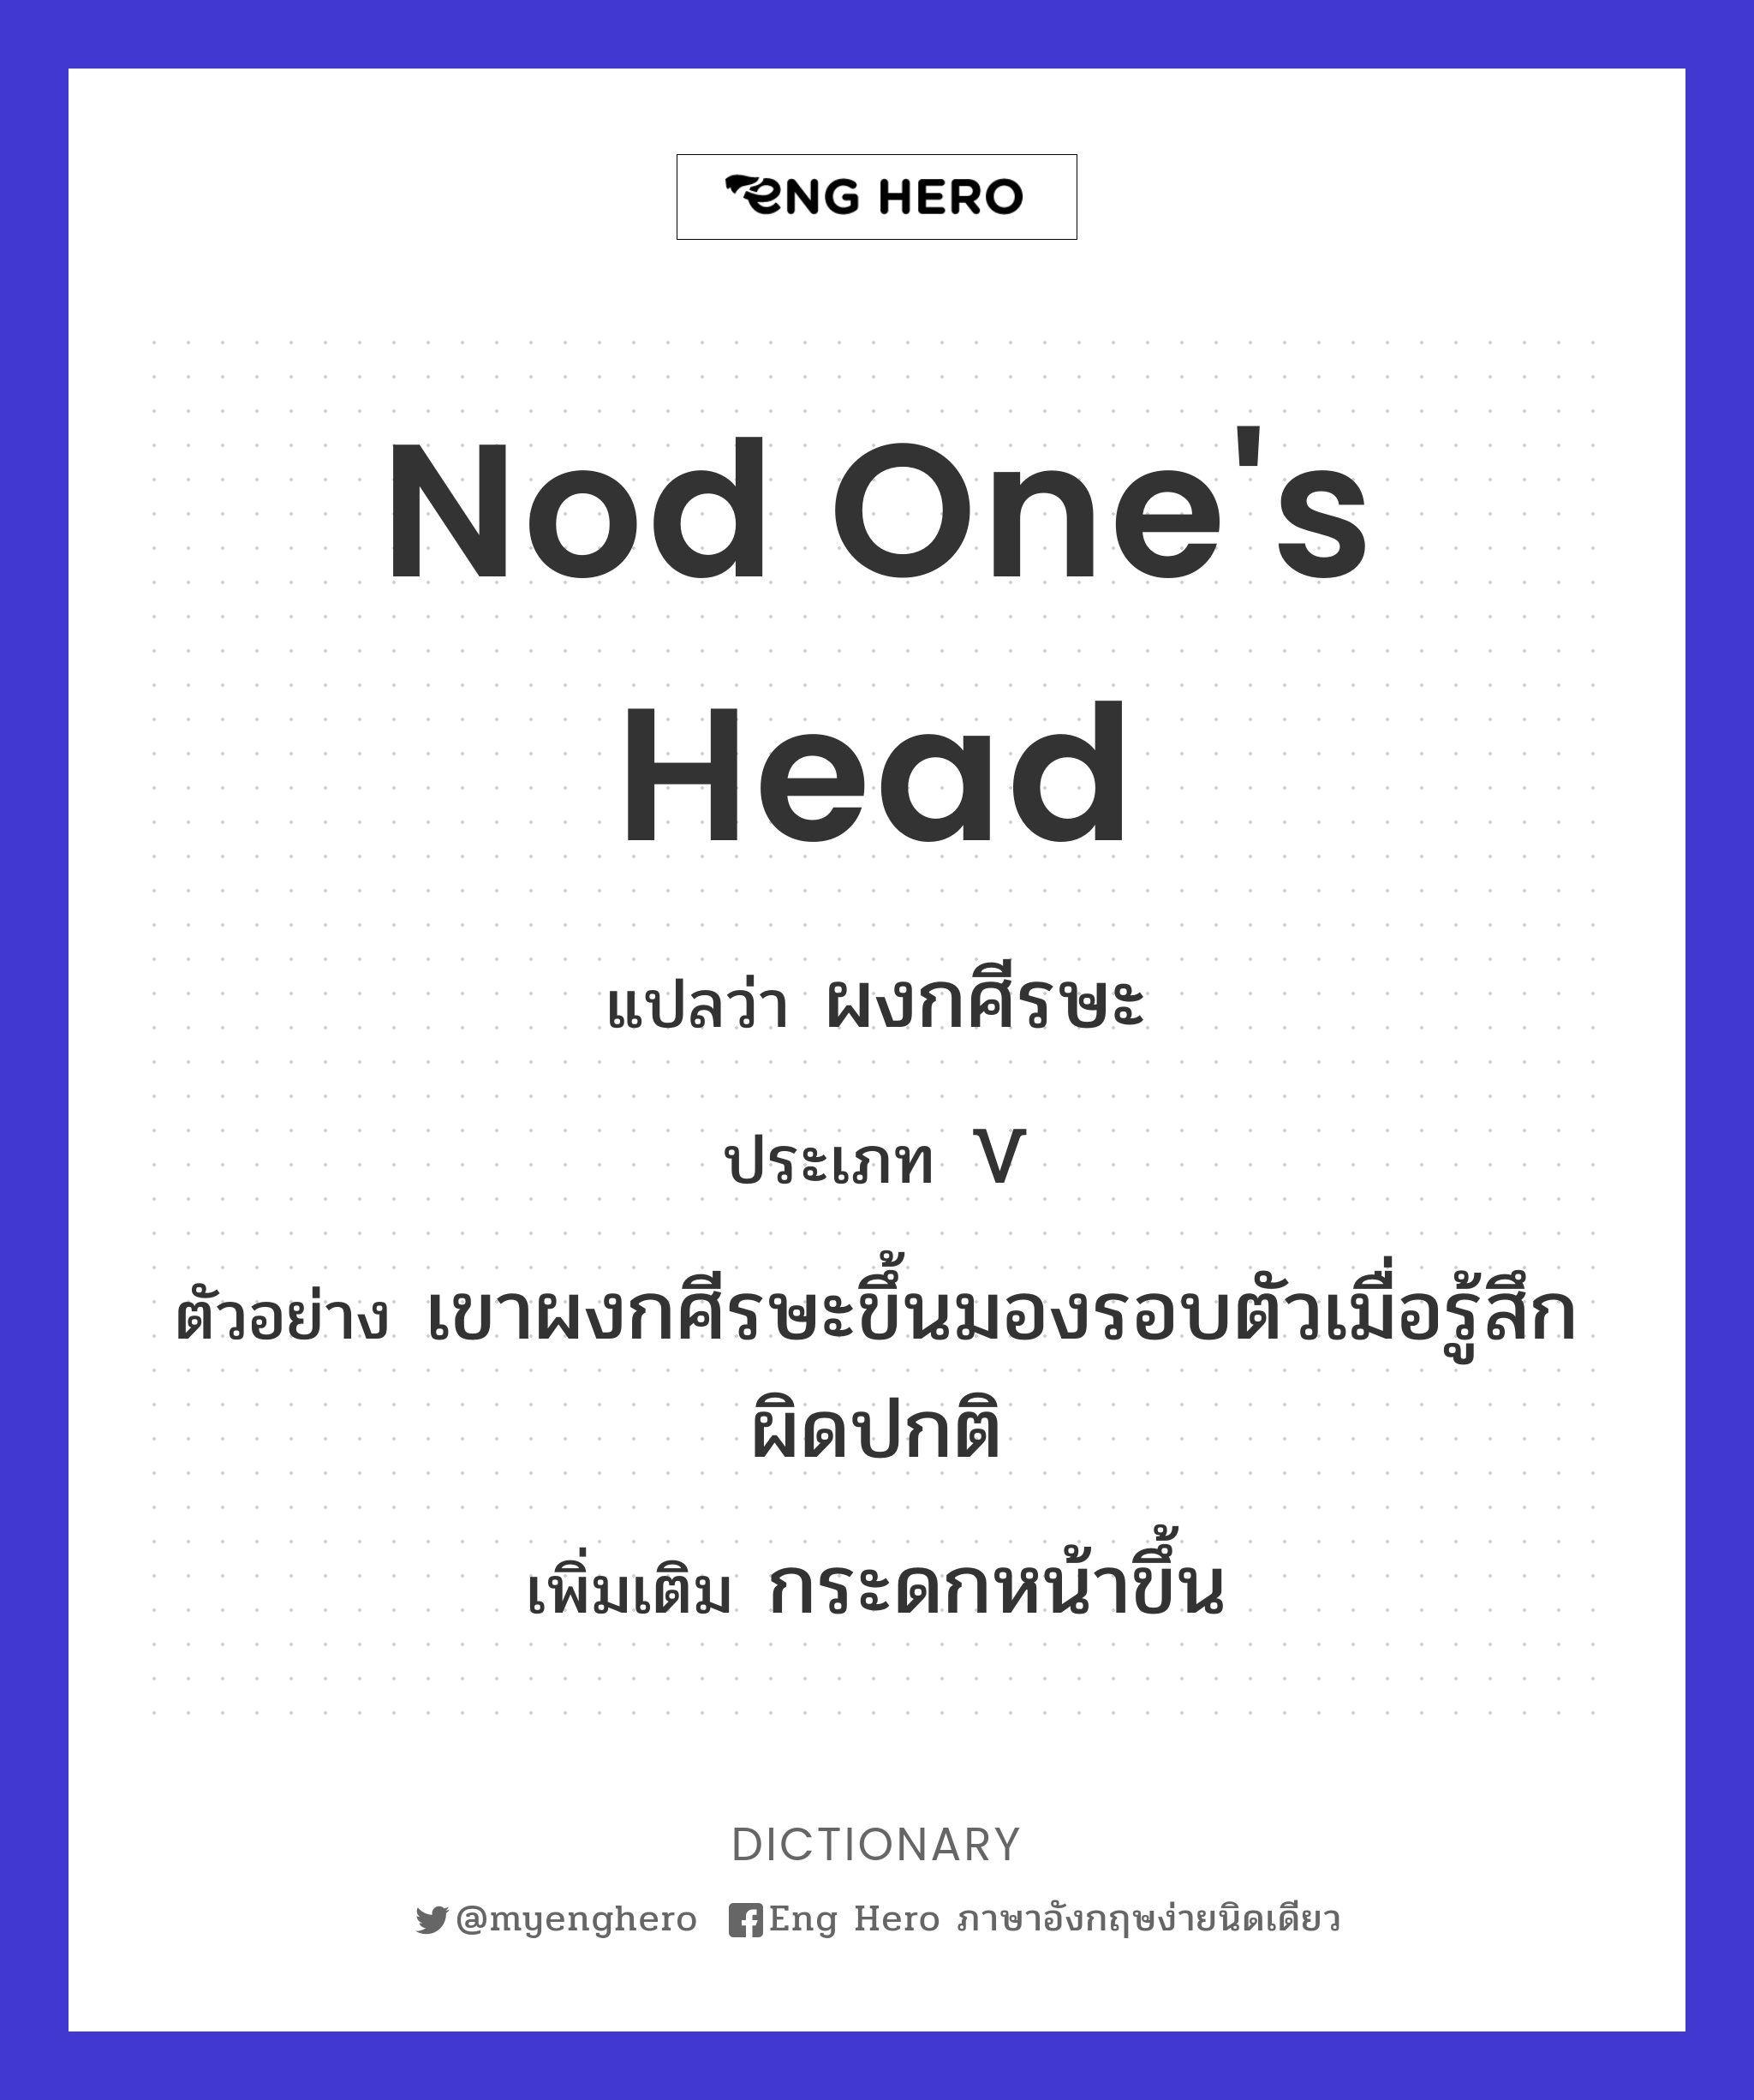 nod one's head